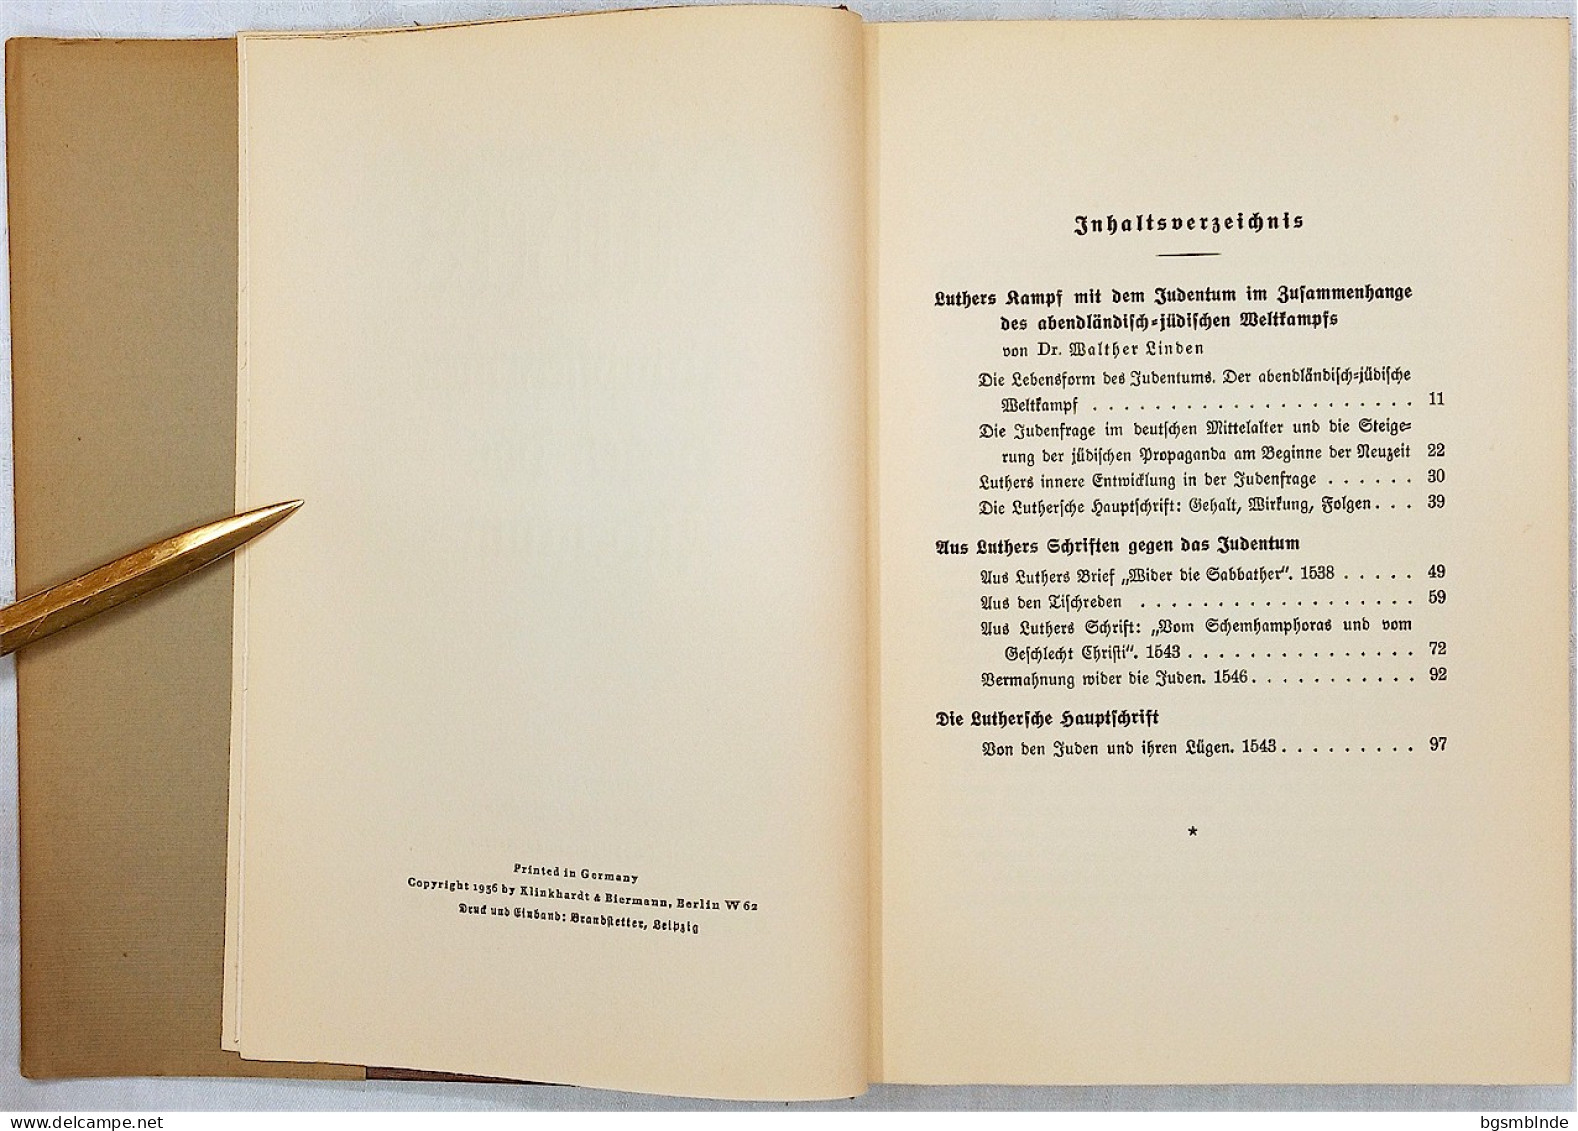 1936 - Walther Linden - Luthers Kampfschriften Gegen Das Judentum / 234 S. - 16x22,5x3,9cm - Contemporary Politics